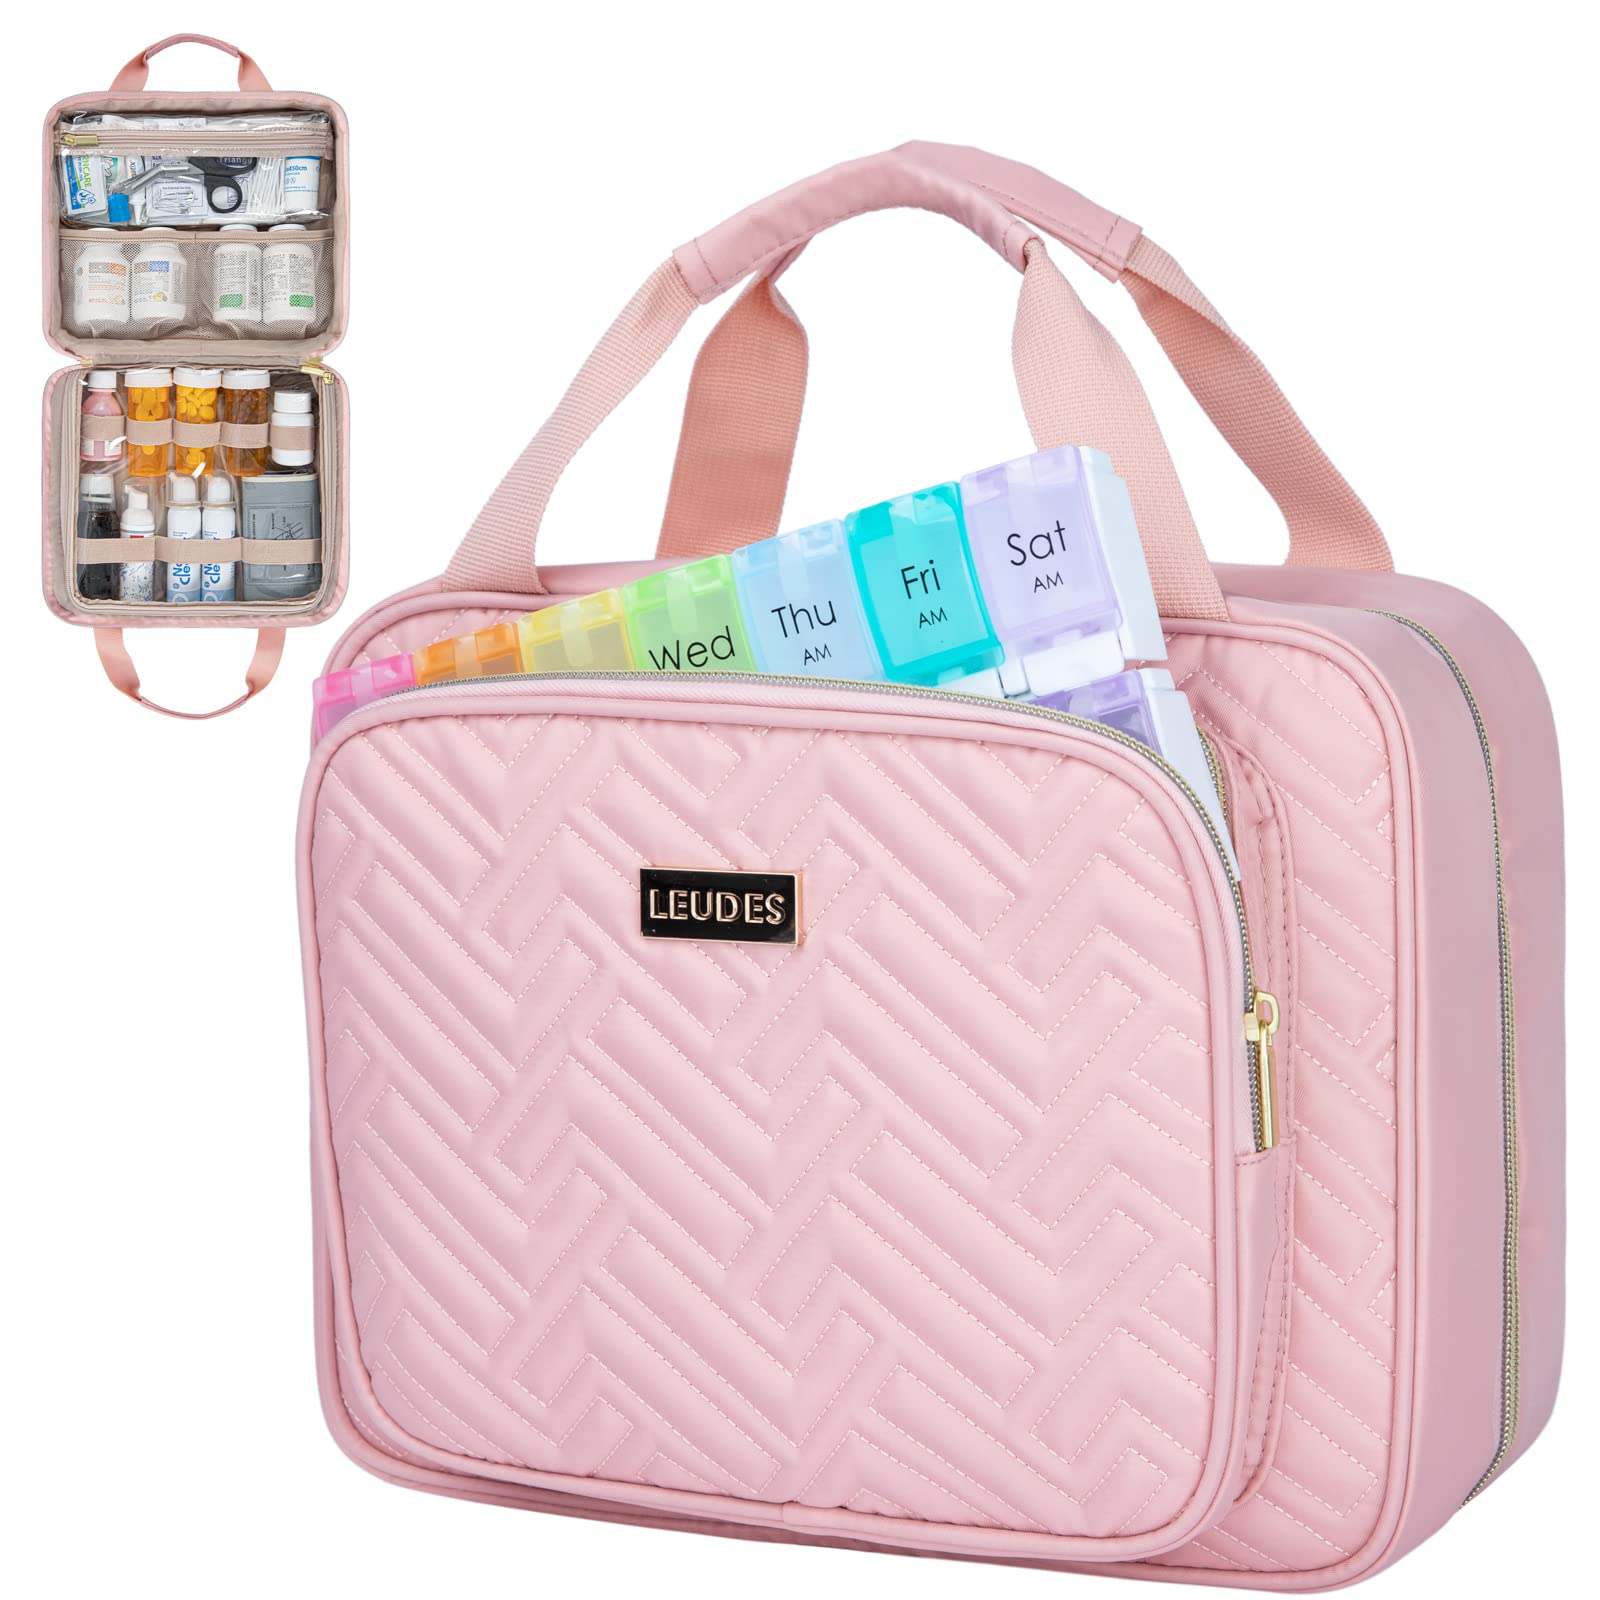 Travel Medicine Bag, Portable Medicine Storage Bag, Student